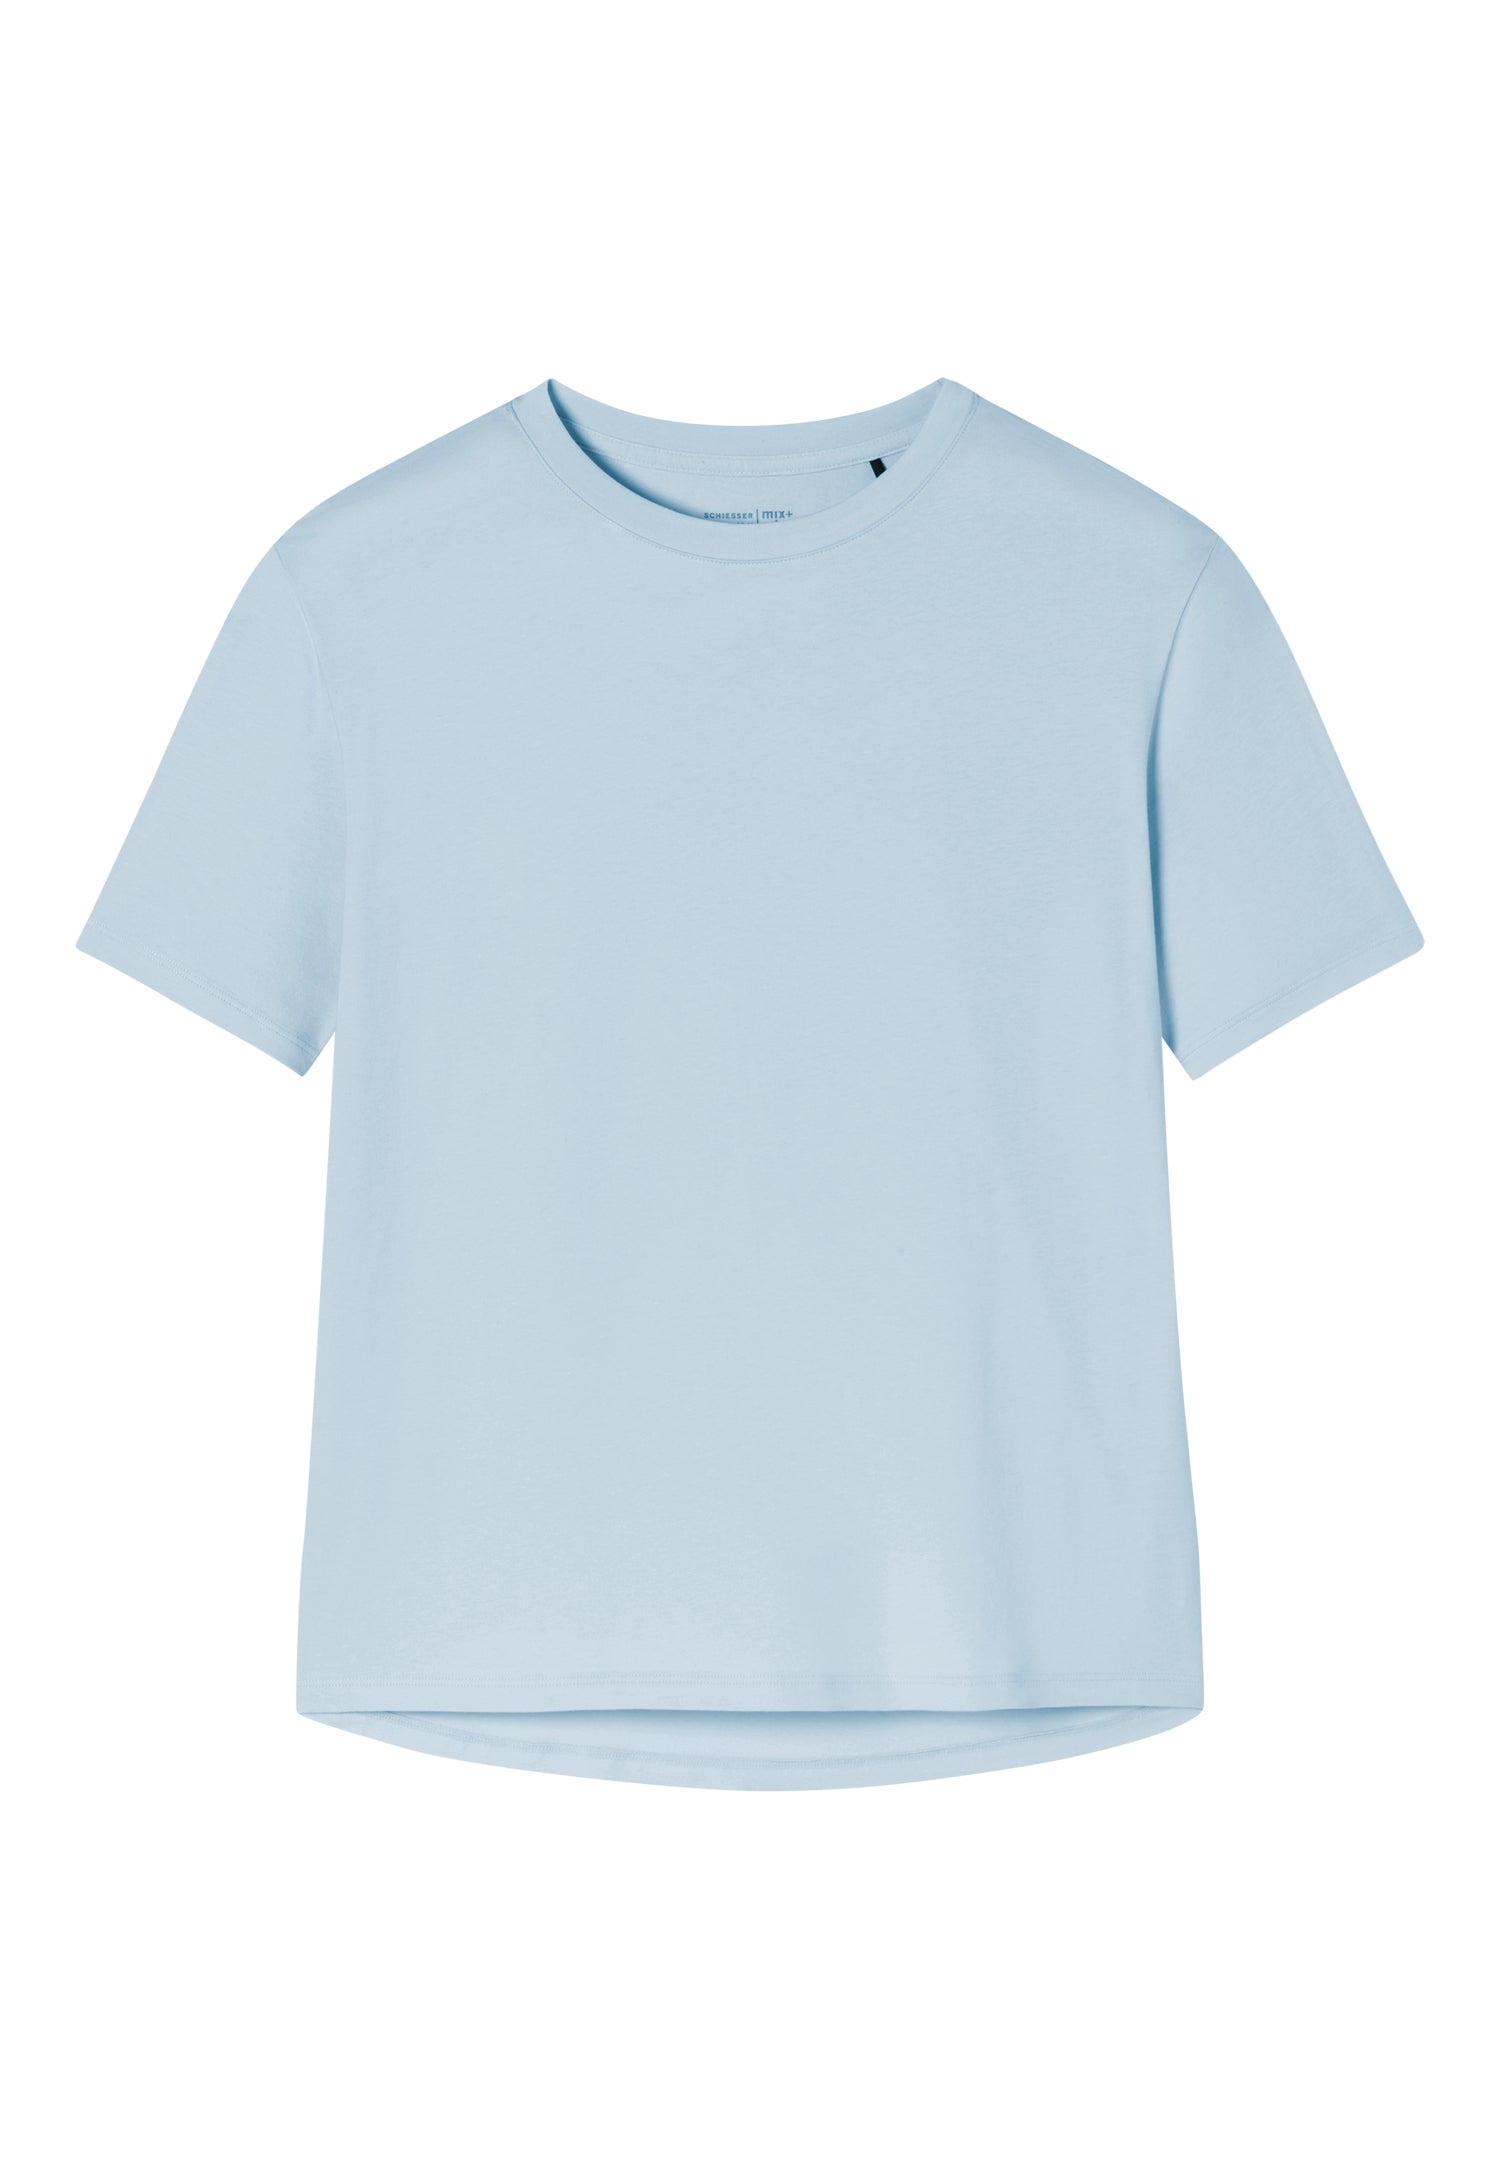 T-Shirt (Air)